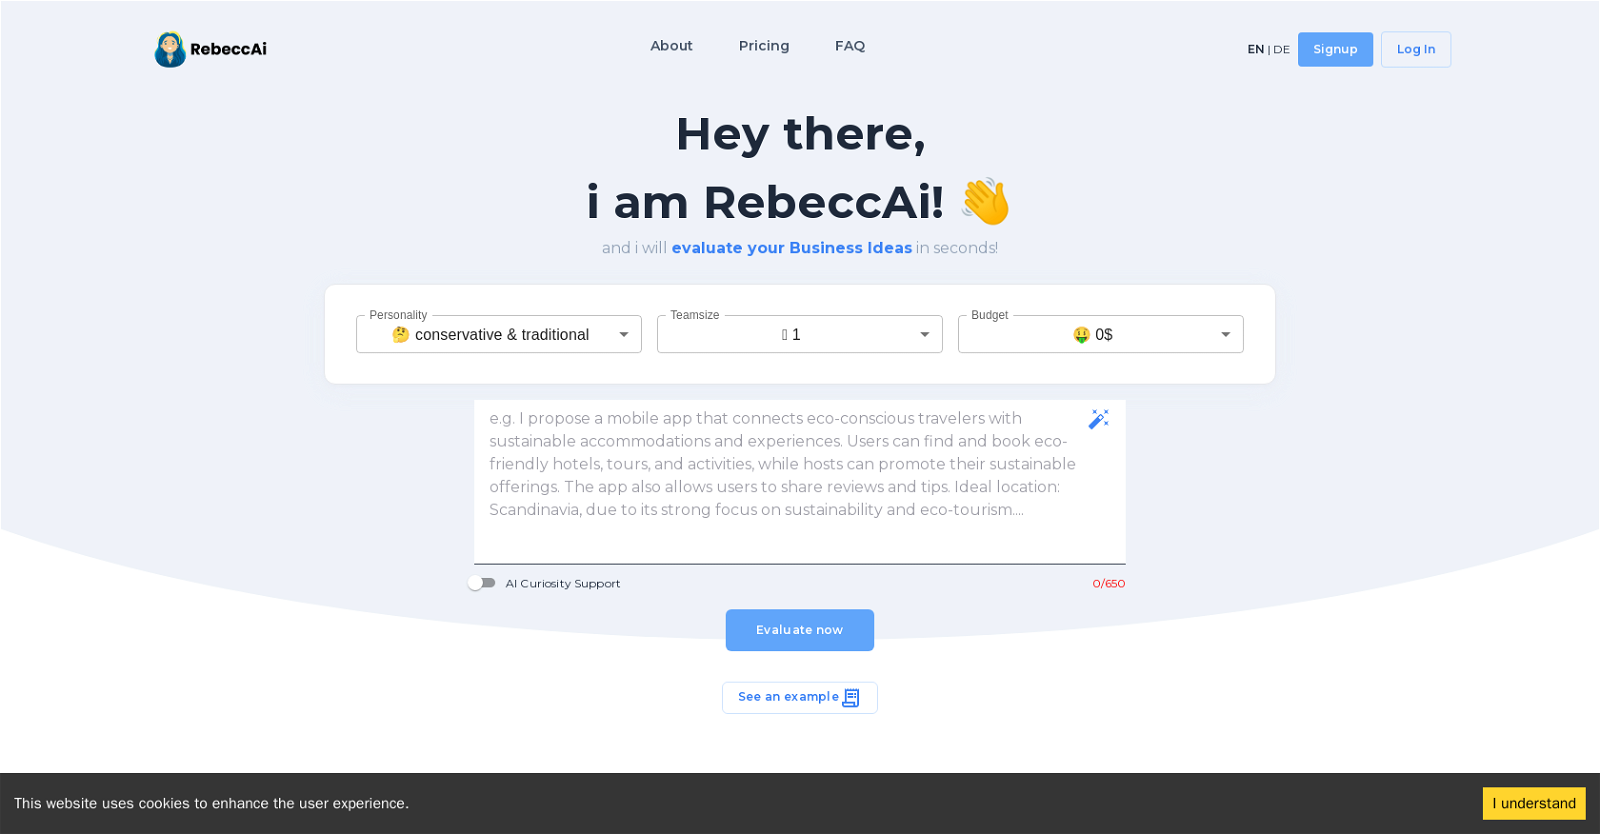 RebeccAi website